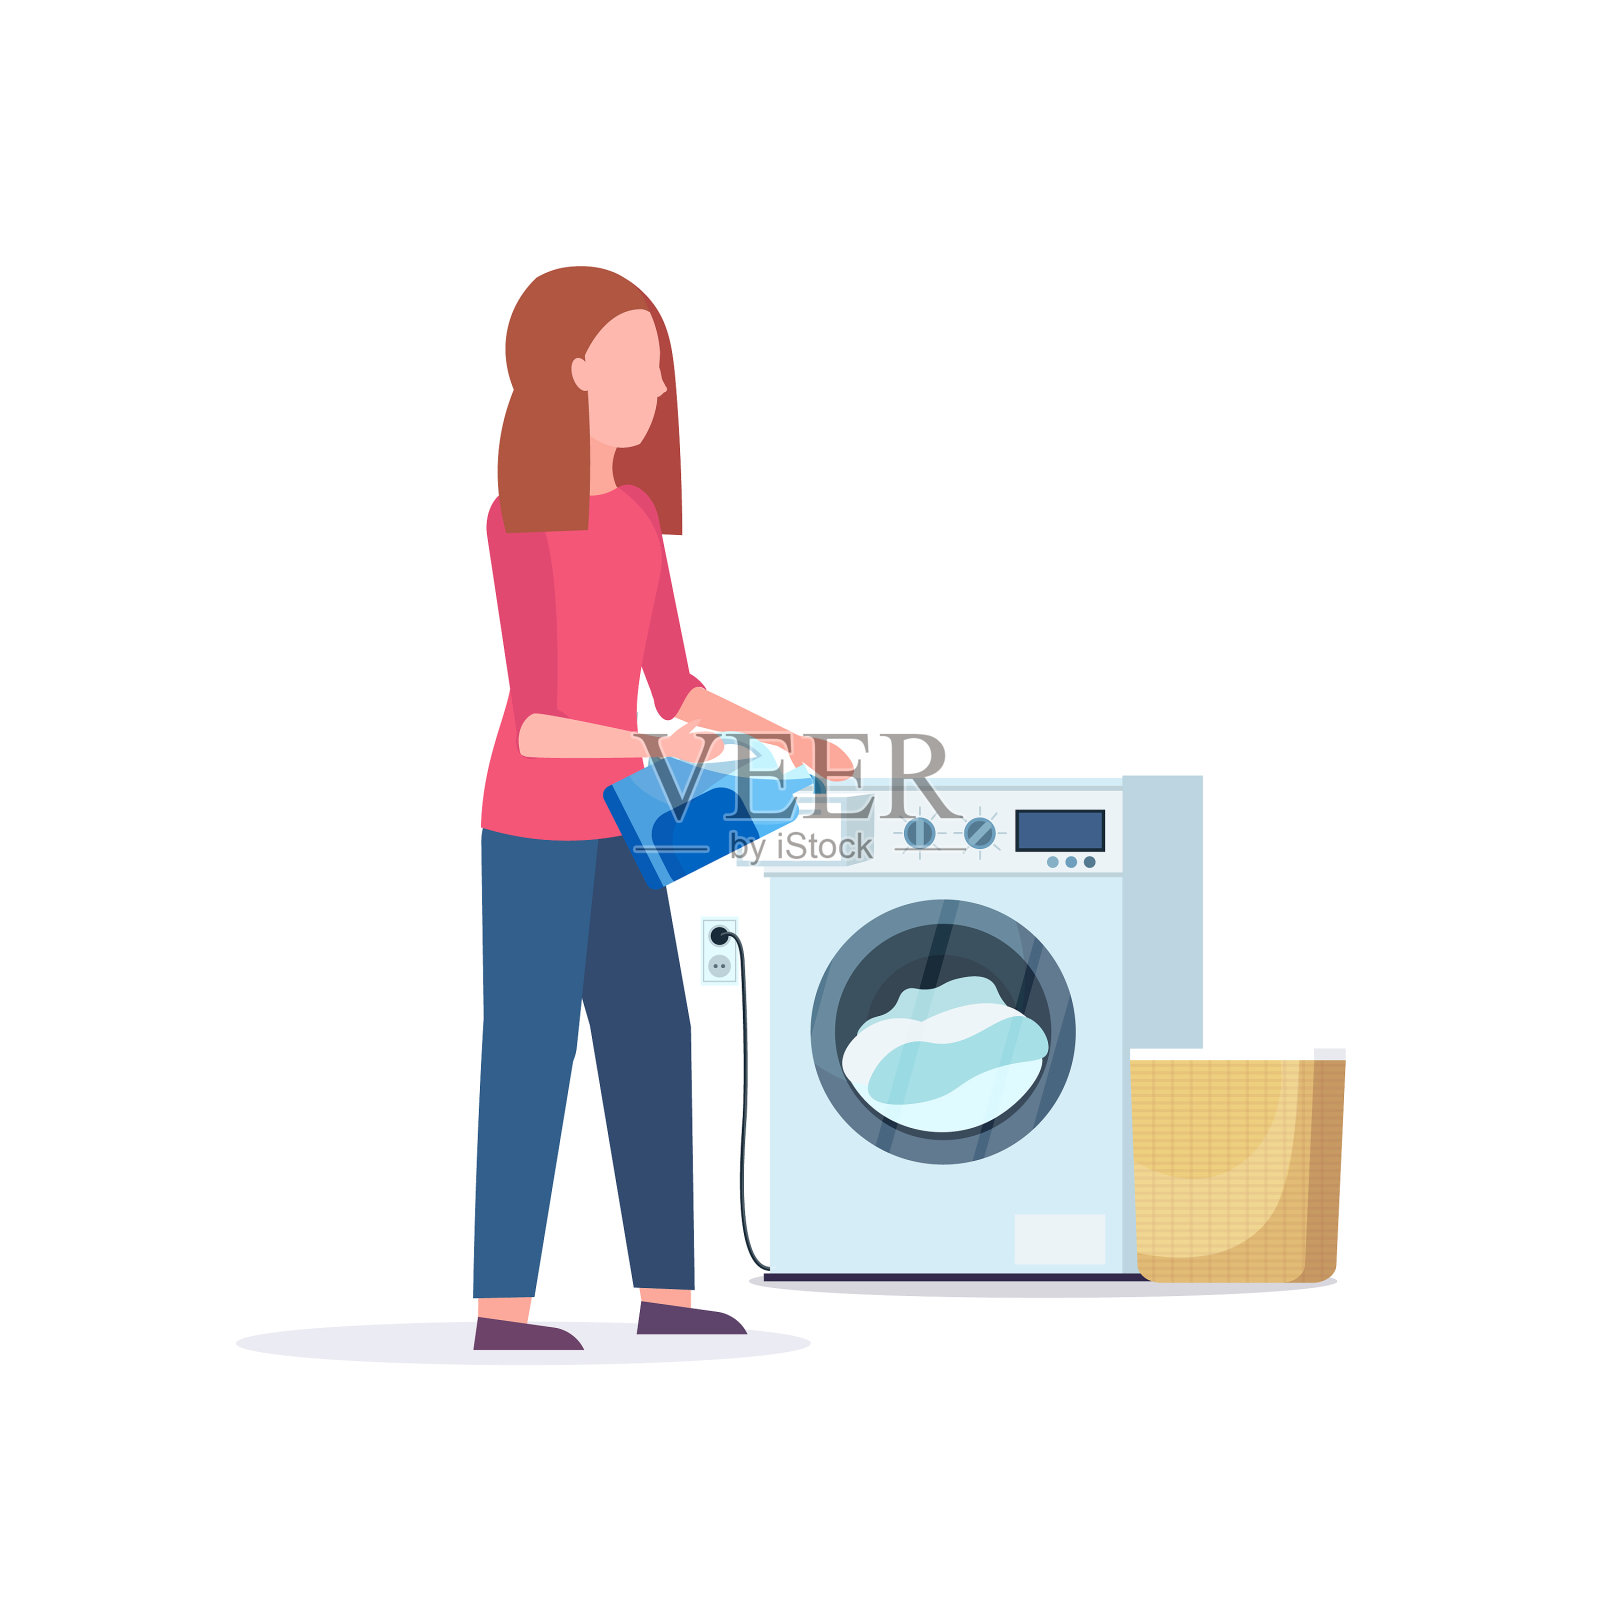 将粉状凝胶倒入洗衣机的妇女设计元素图片